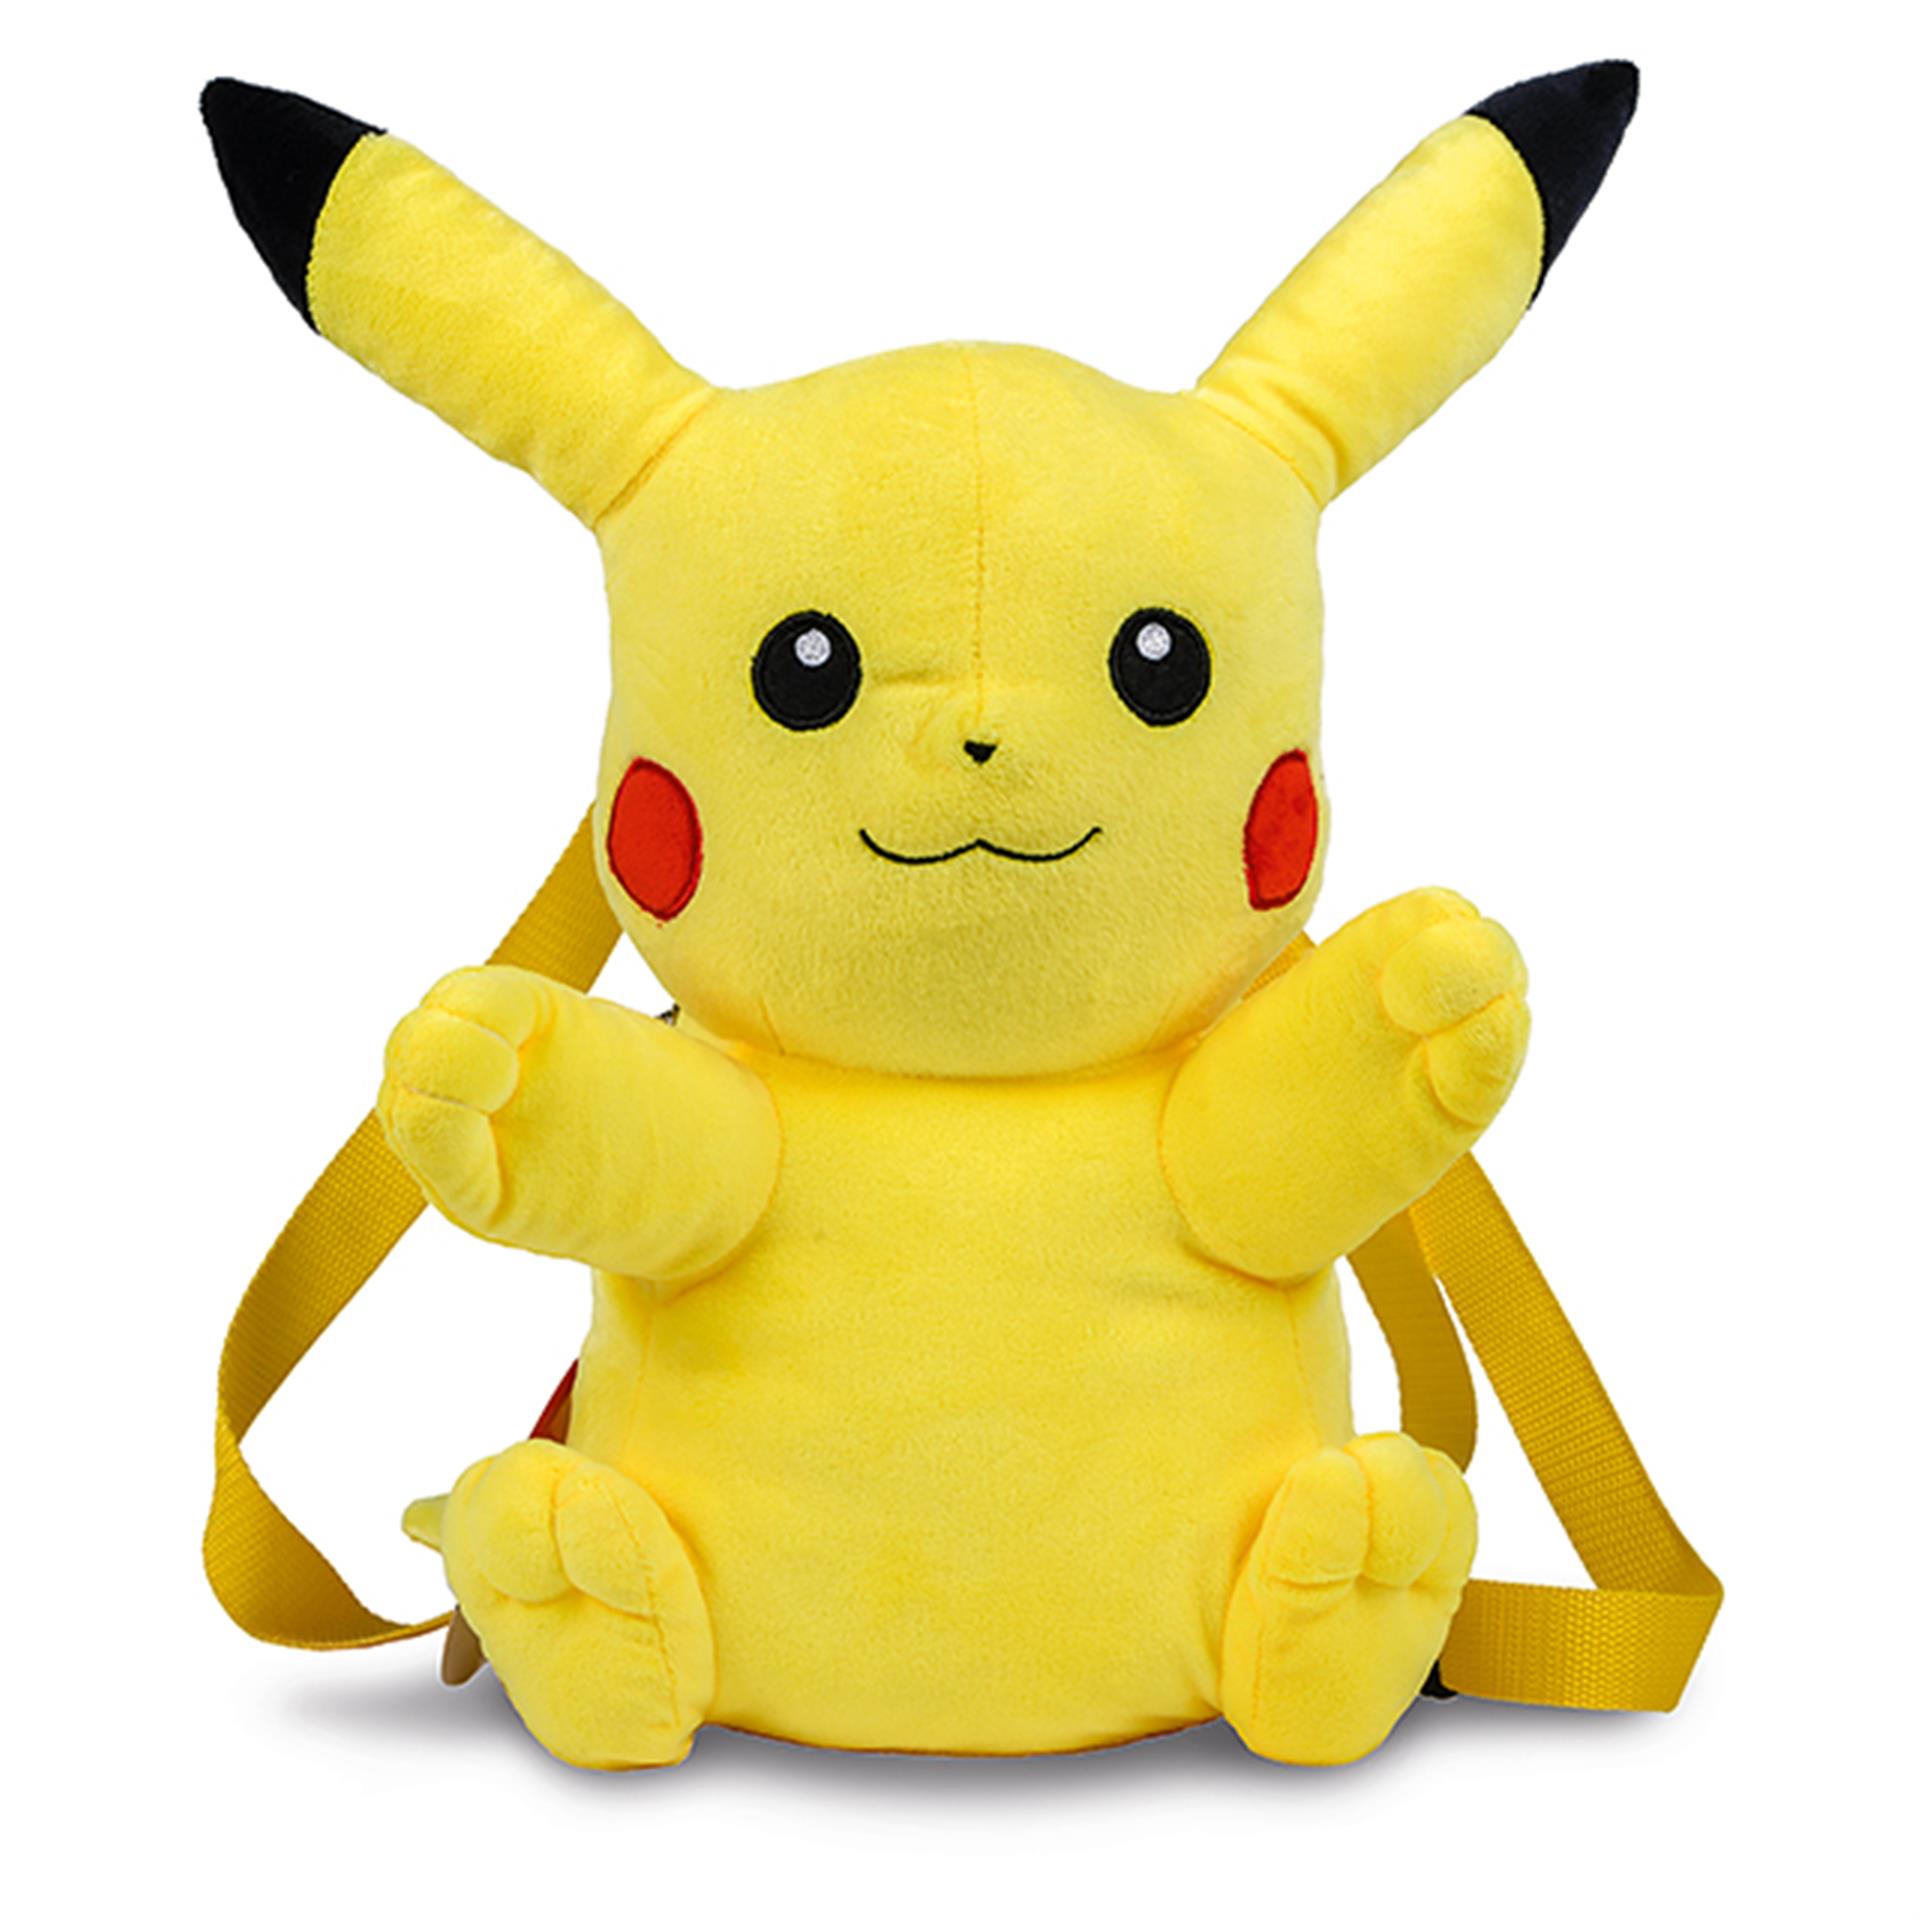 Zainetto Pokémon Pikachu